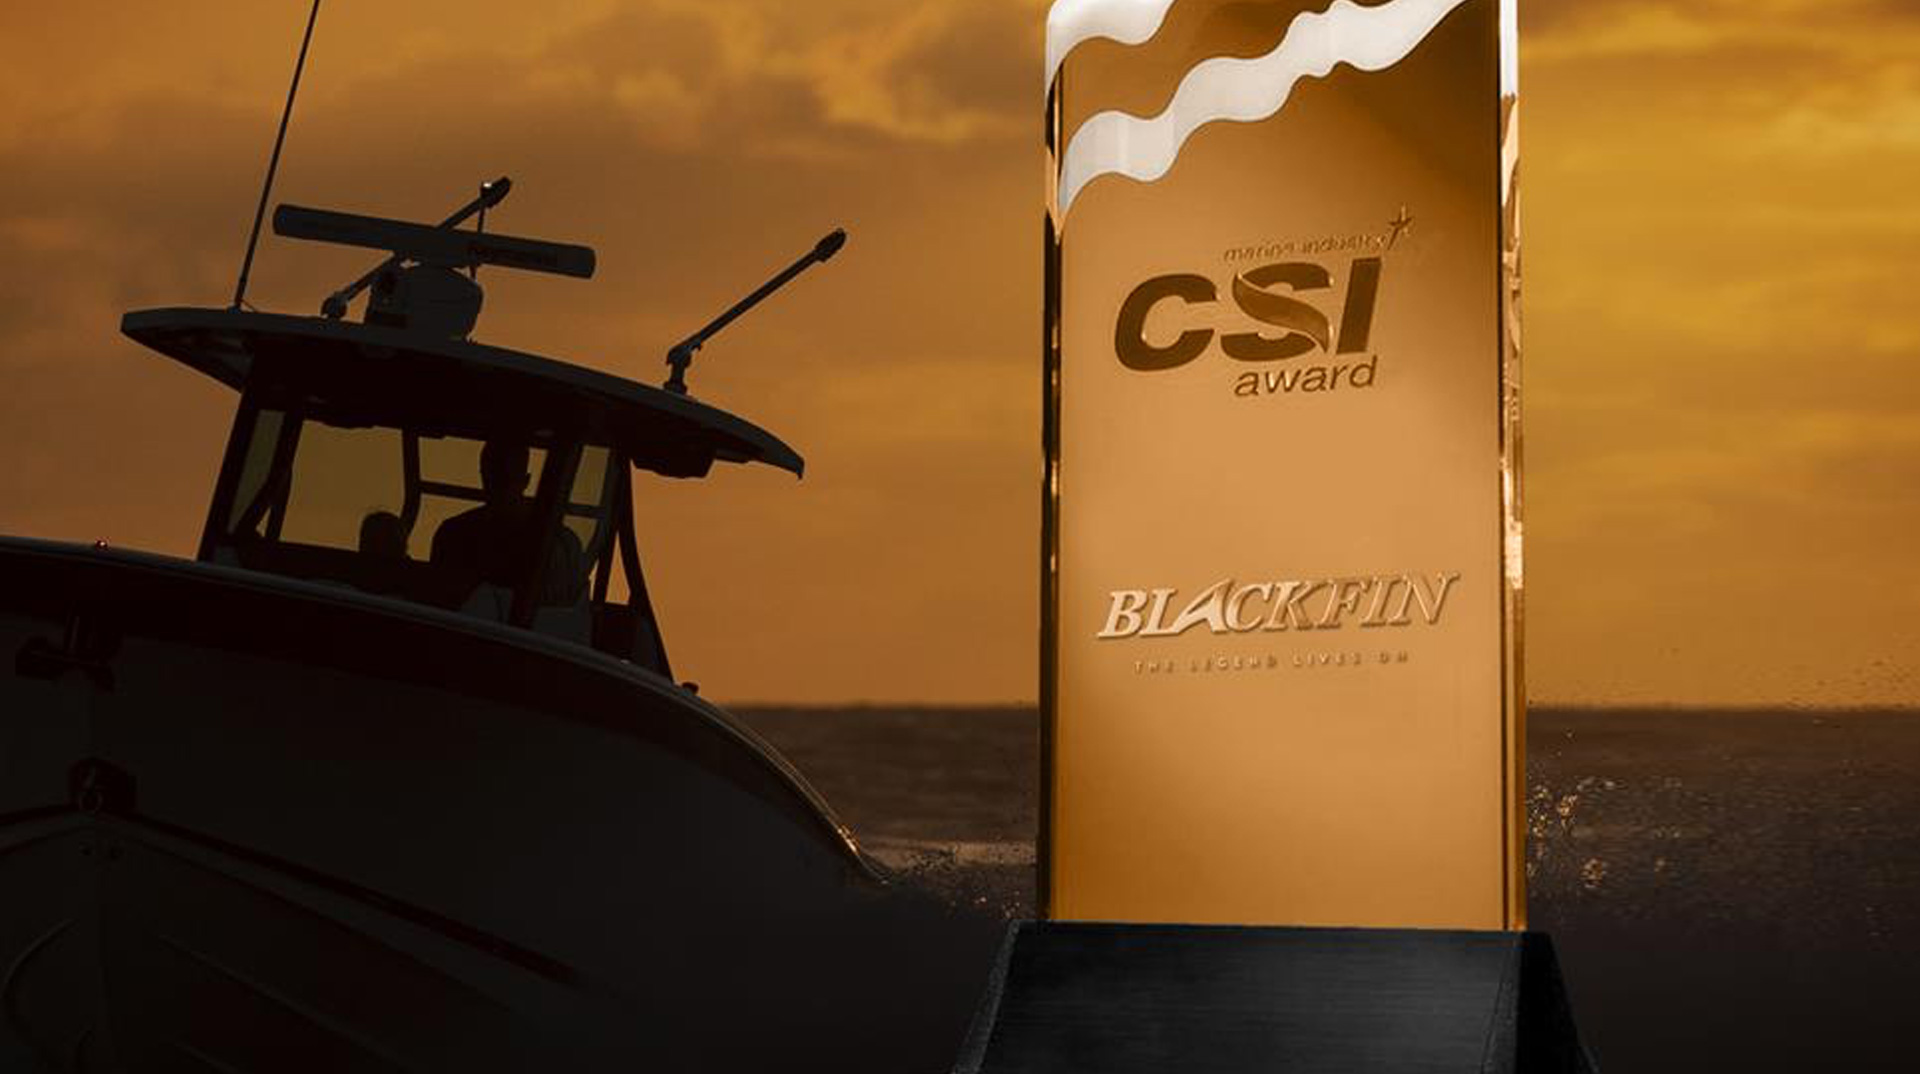 Blackfin CSI award